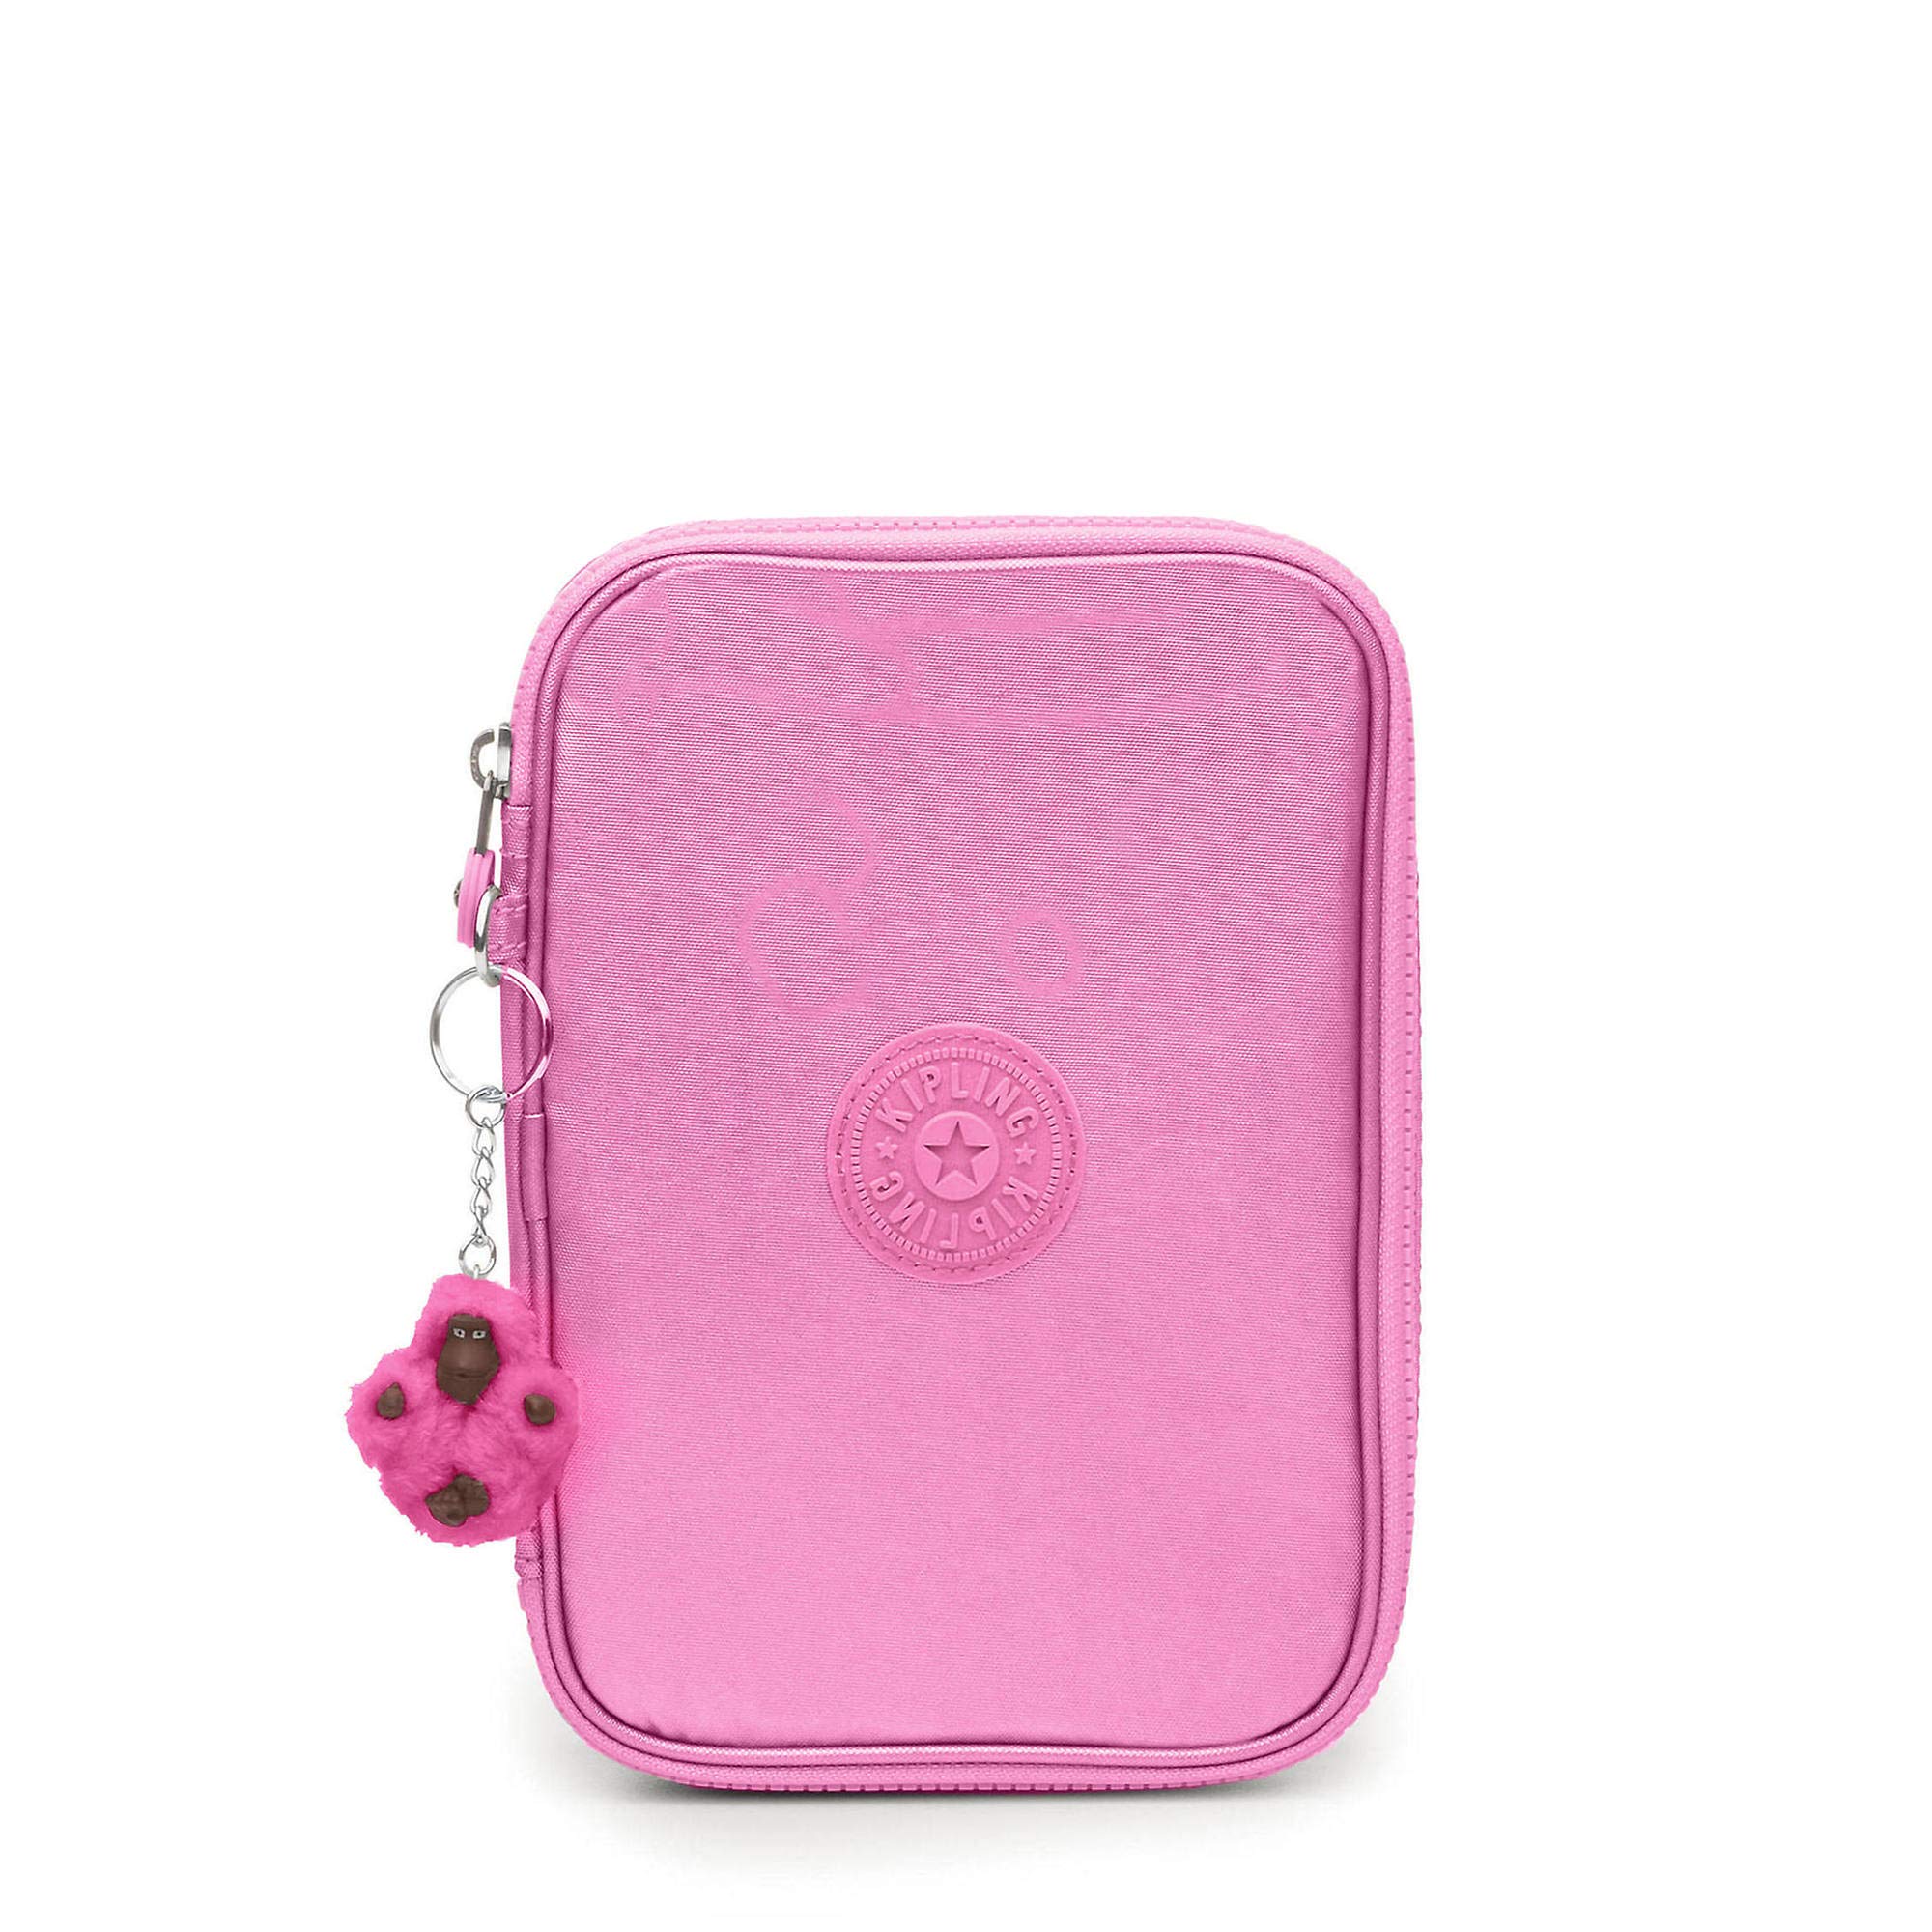 Kipling 100 Pens Metallic Case Prom Pink Metallic